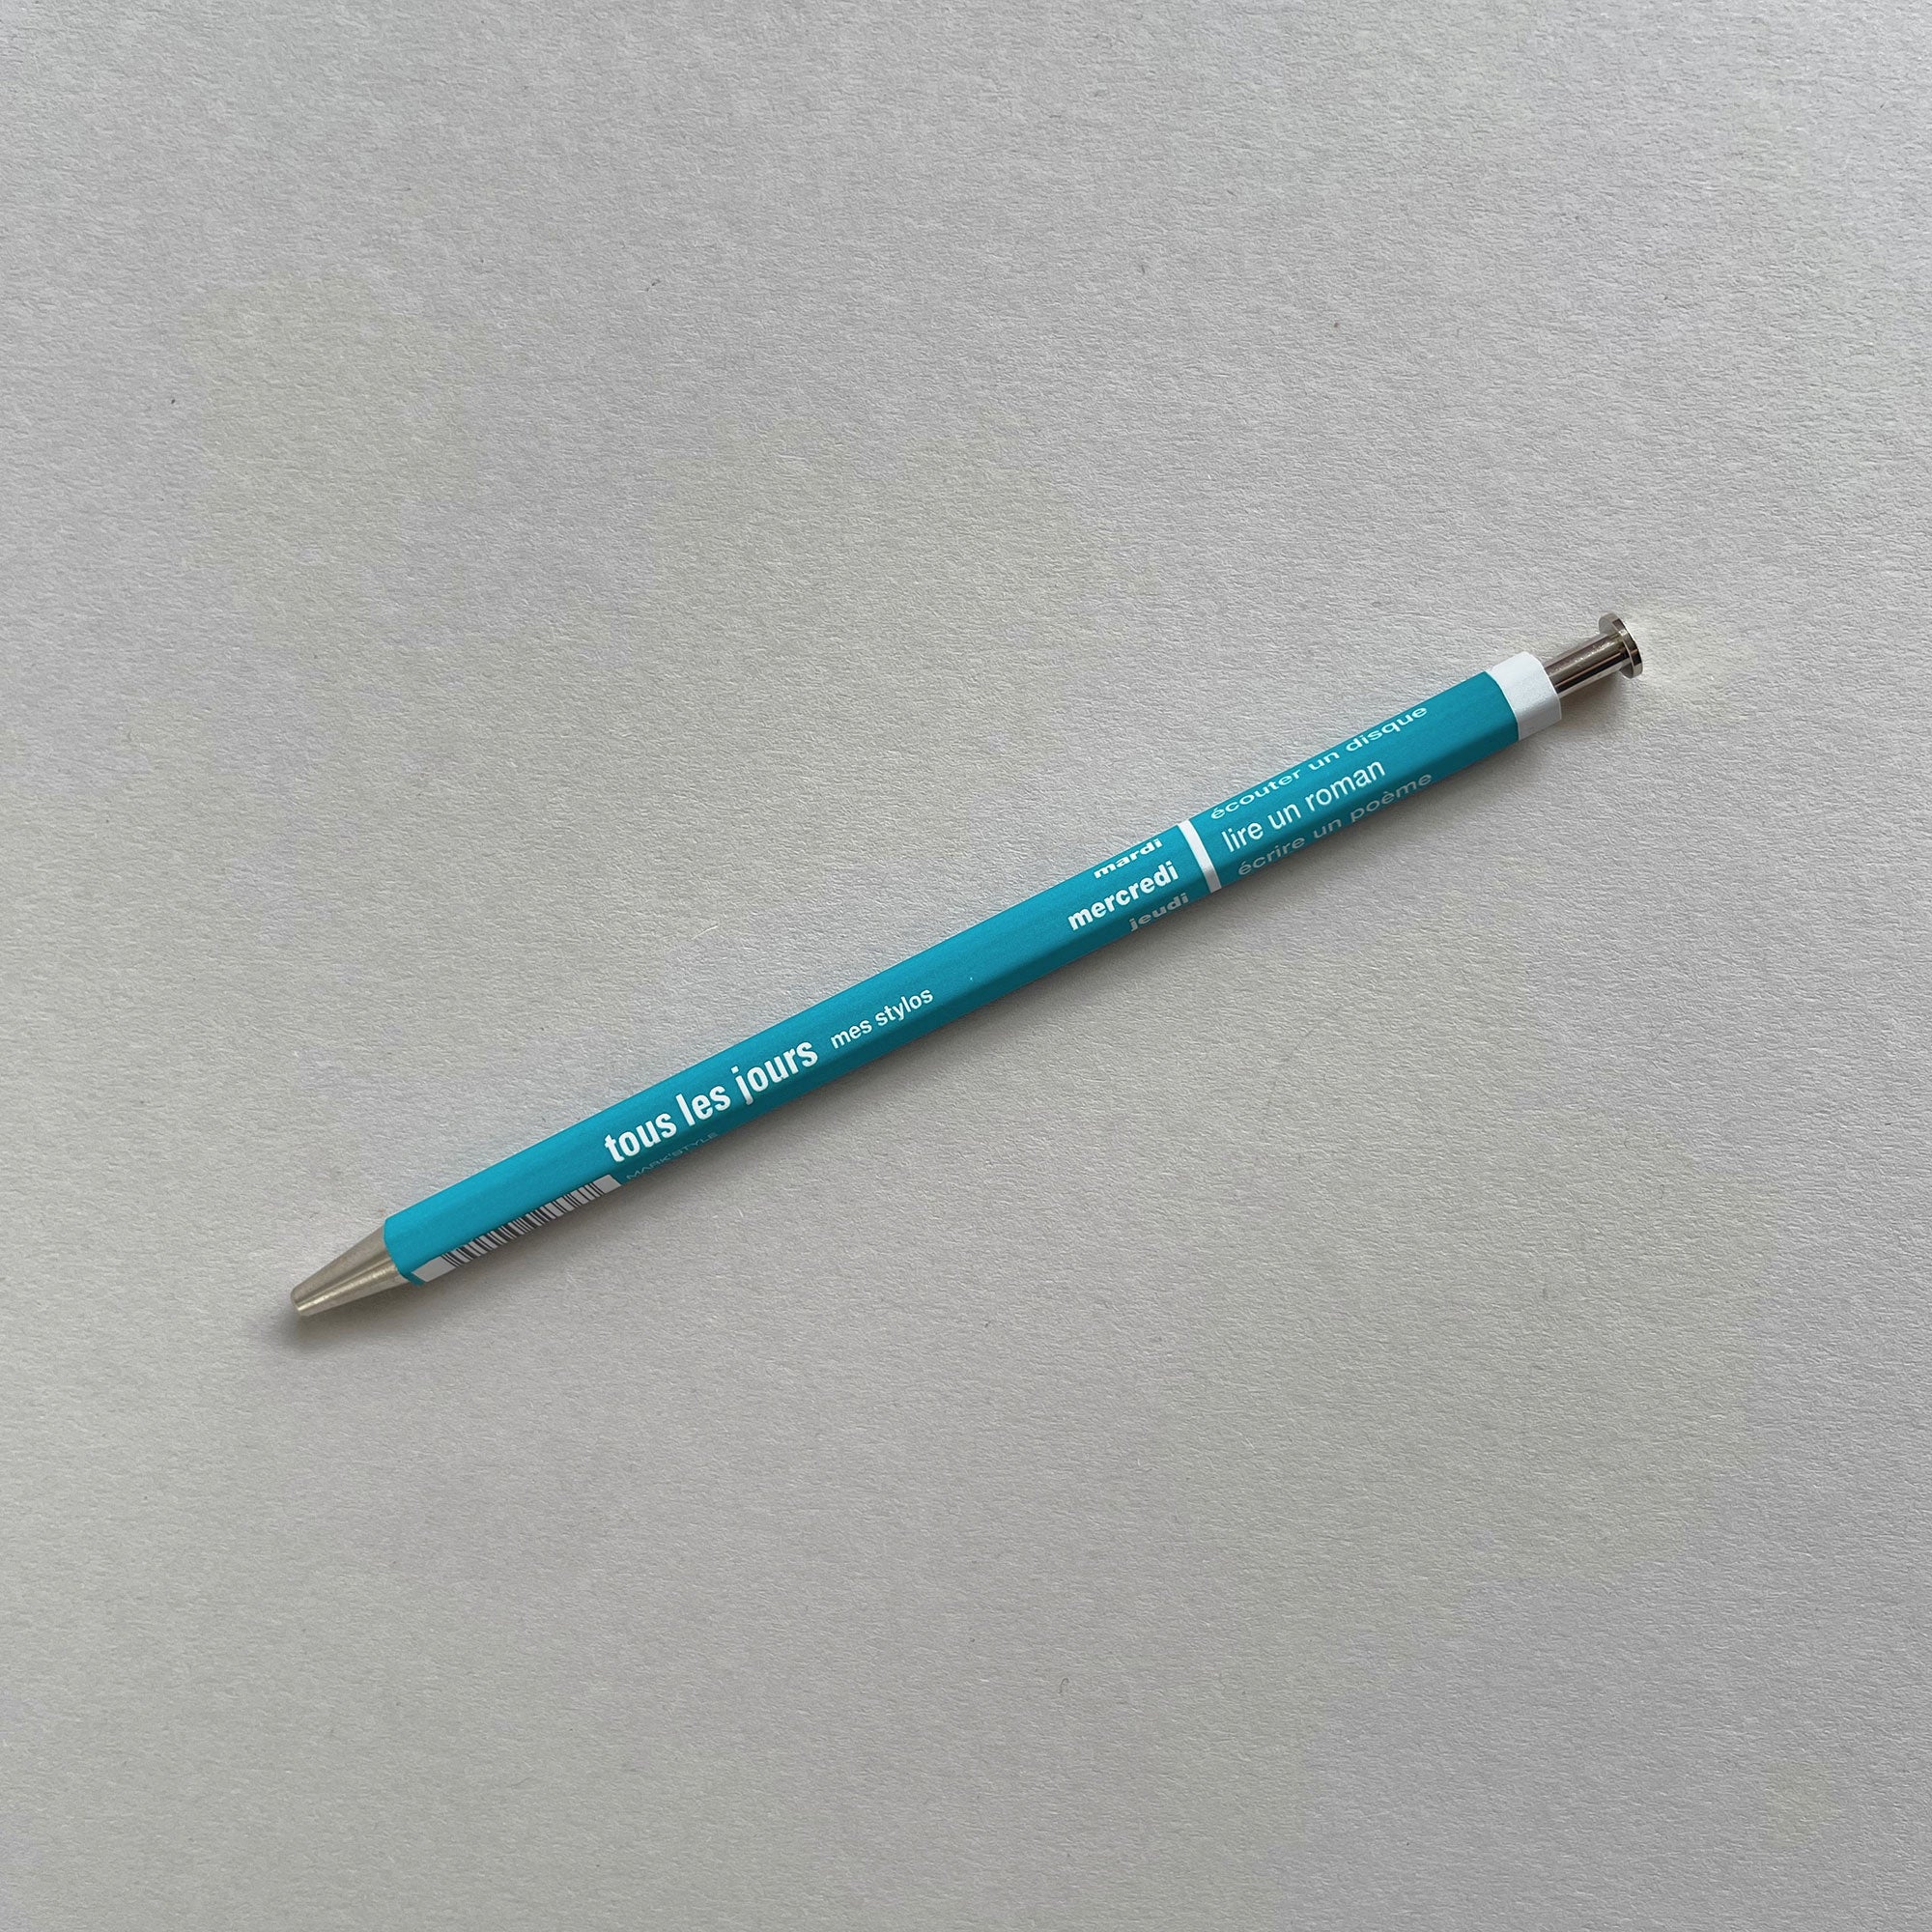 Mark's Inc. Tous Les Jours Mes Stylos Mechanical Pencil